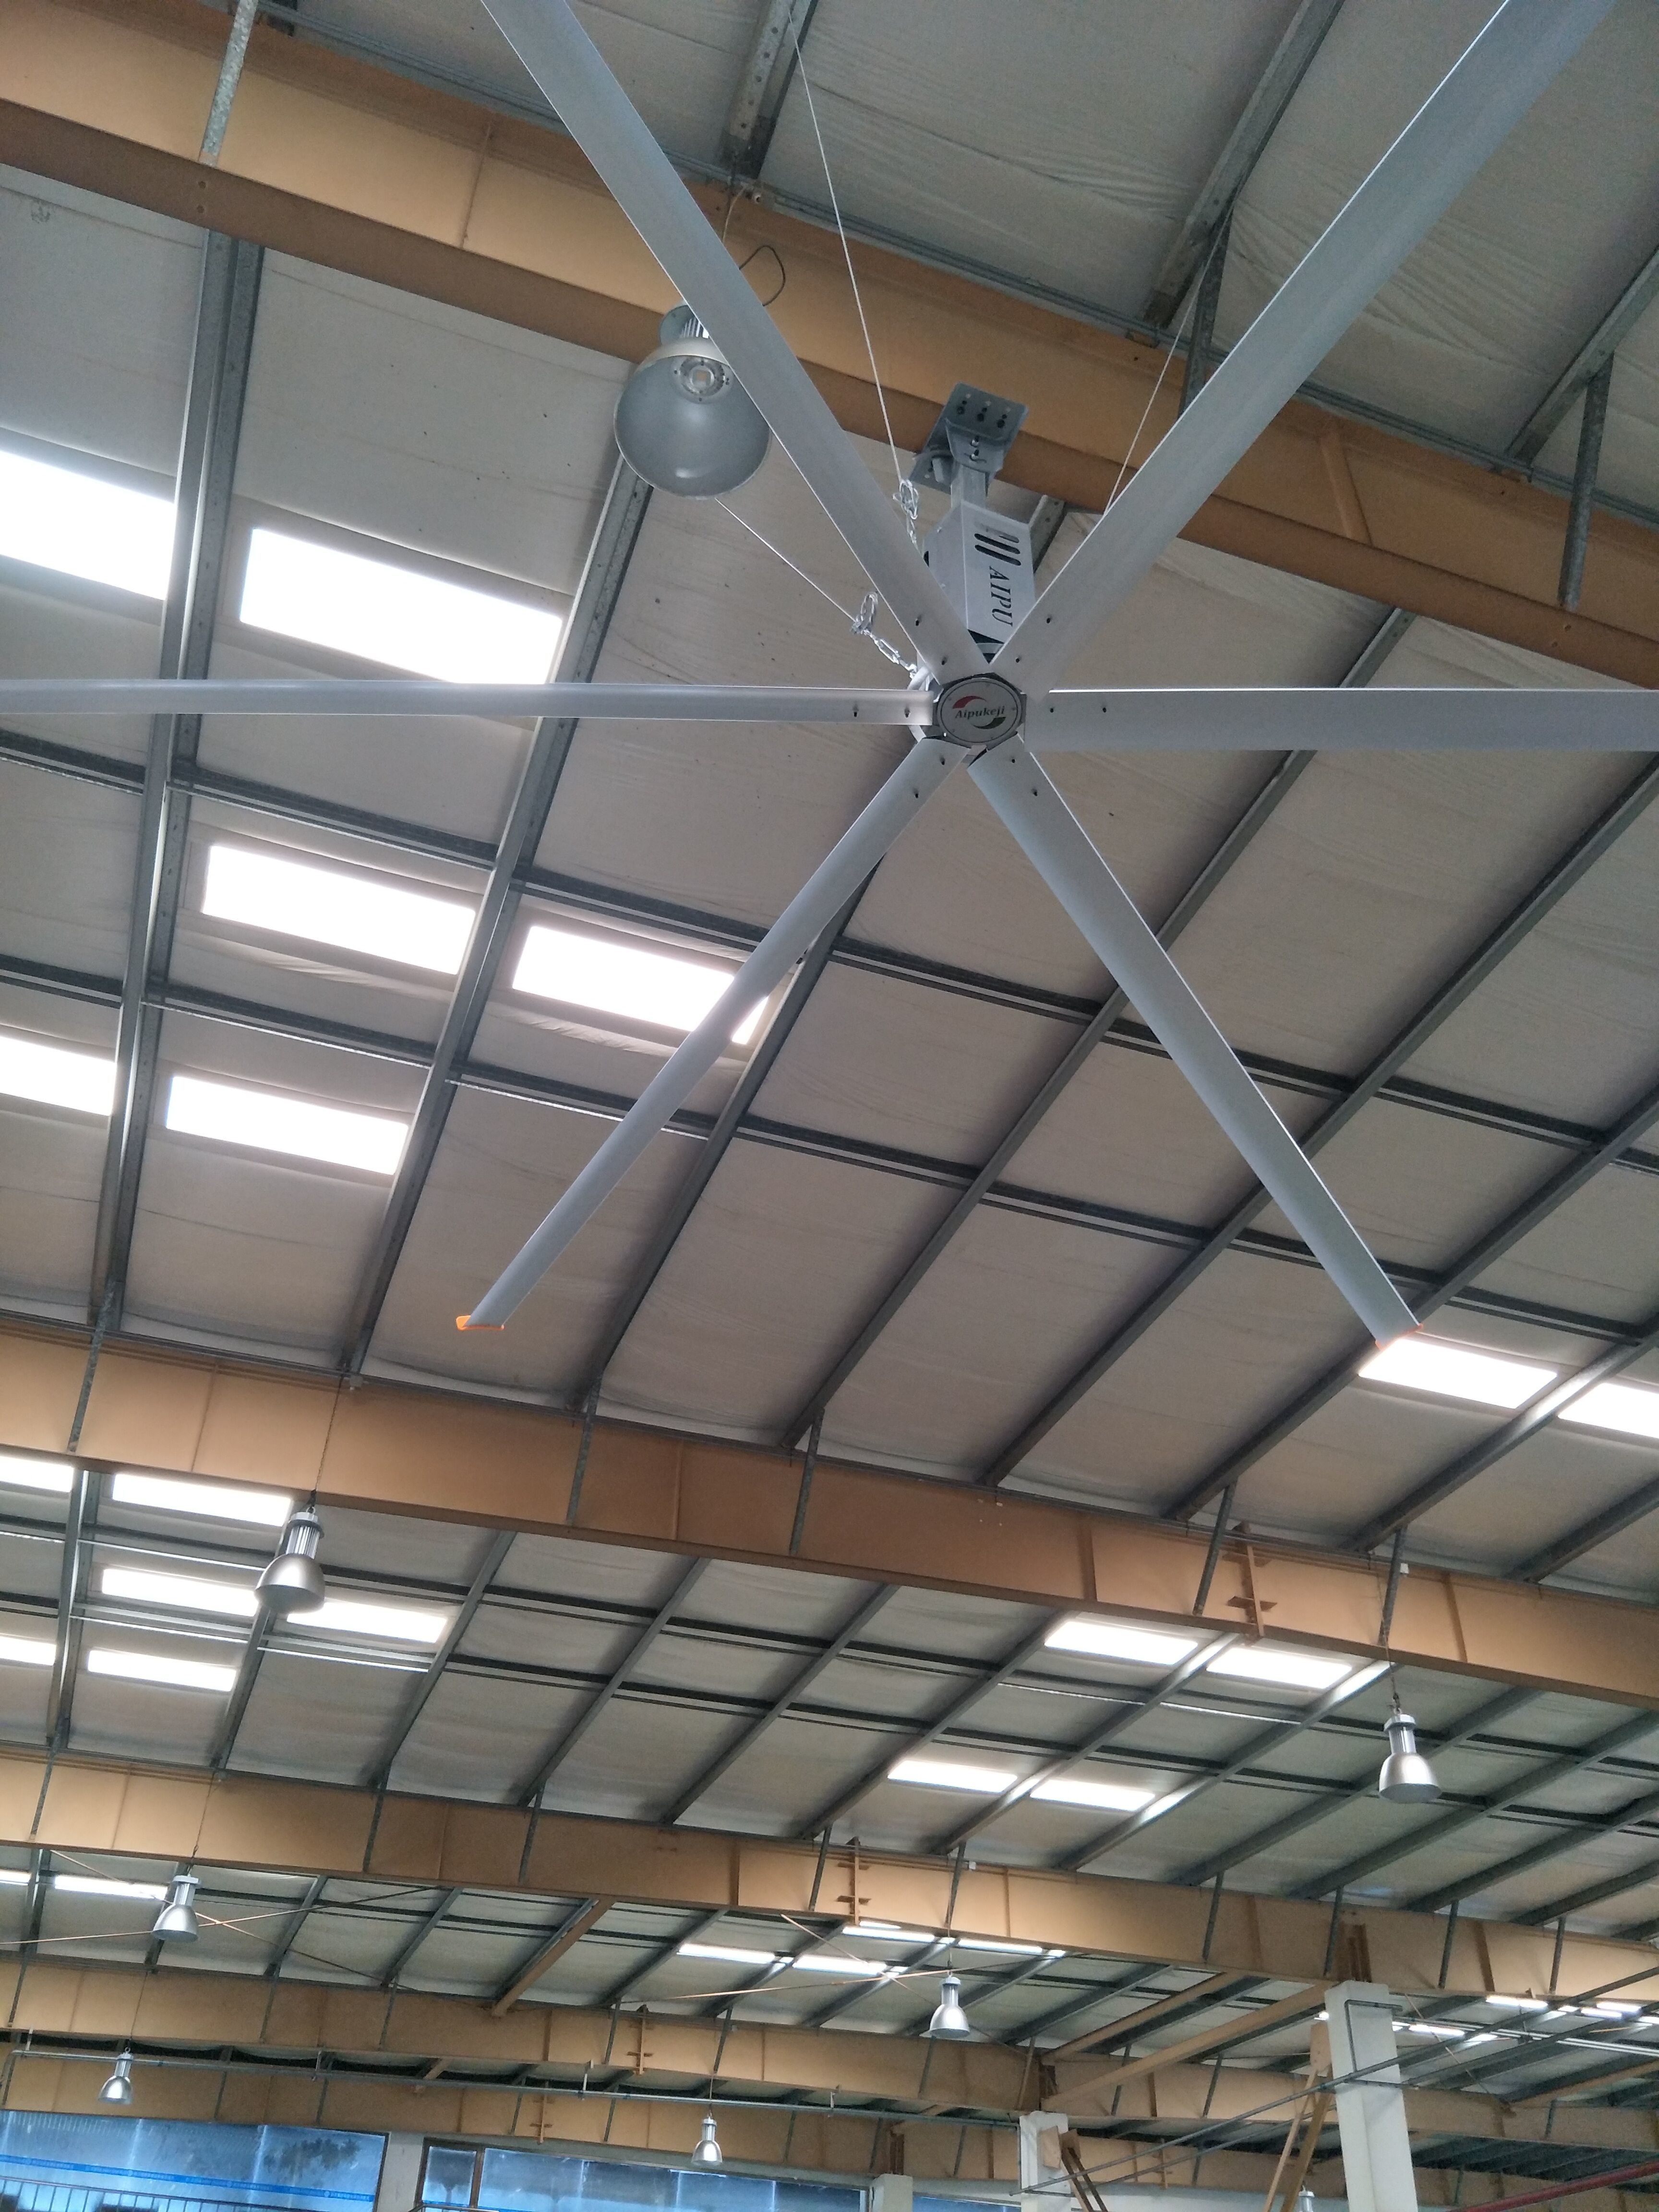 потолочные вентиляторы фабрики 3.4м ХВЛС/большие потолочные вентиляторы магазина с алюминиевым лезвием